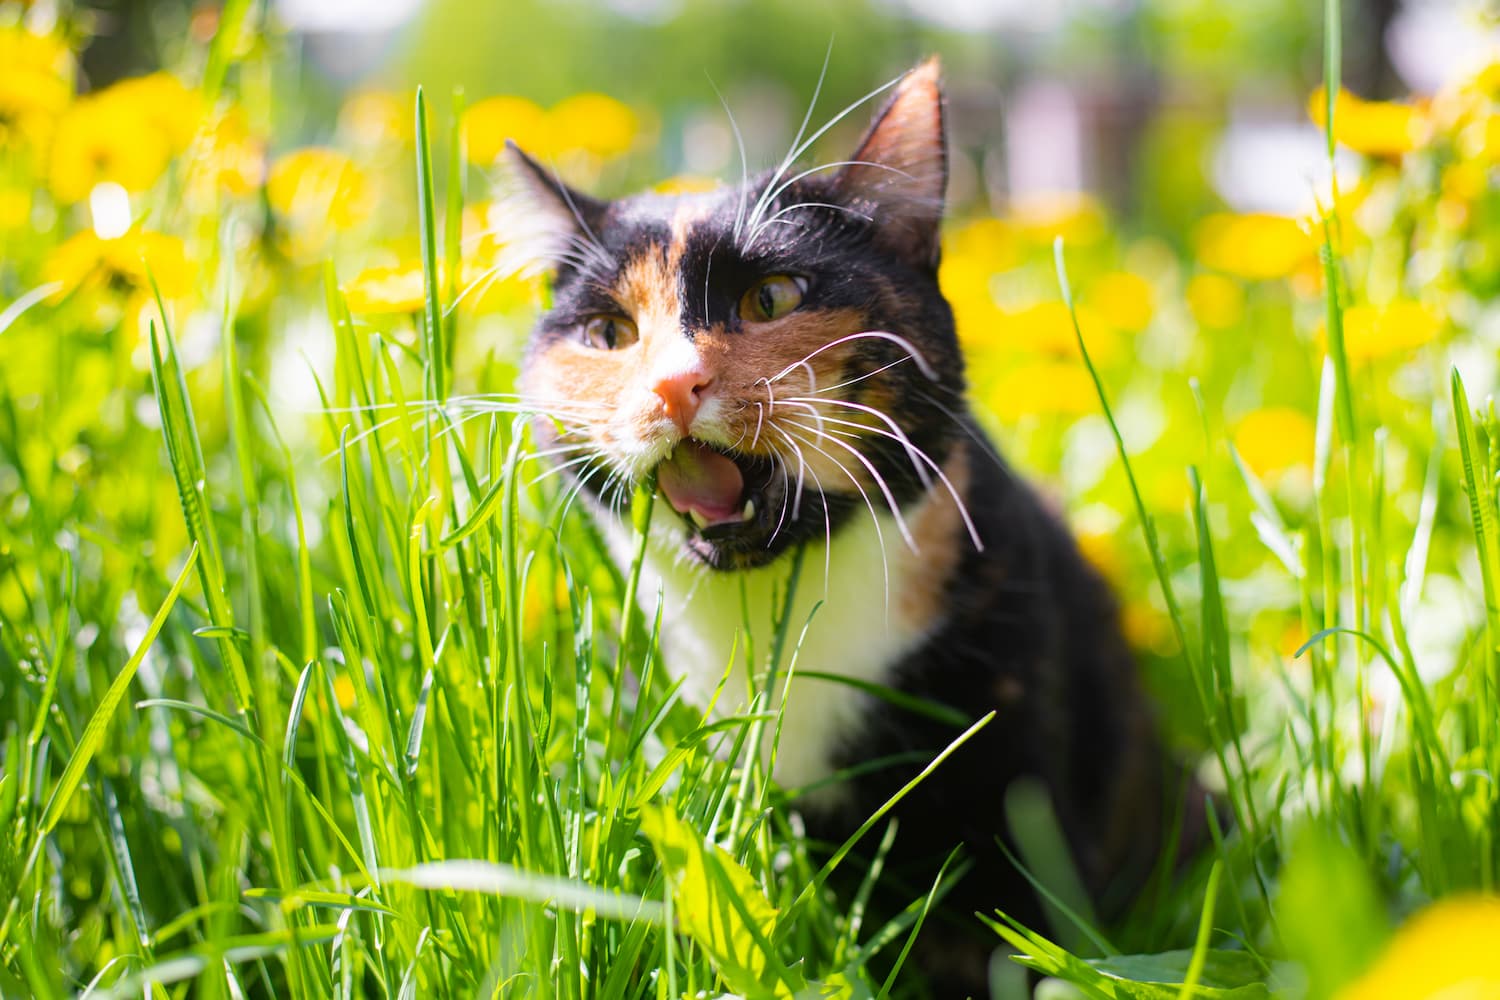 a-cat-eats-grass-on-the-street-a-pet-on-a-walk-c-2021-12-21-21-57-18-utc-1